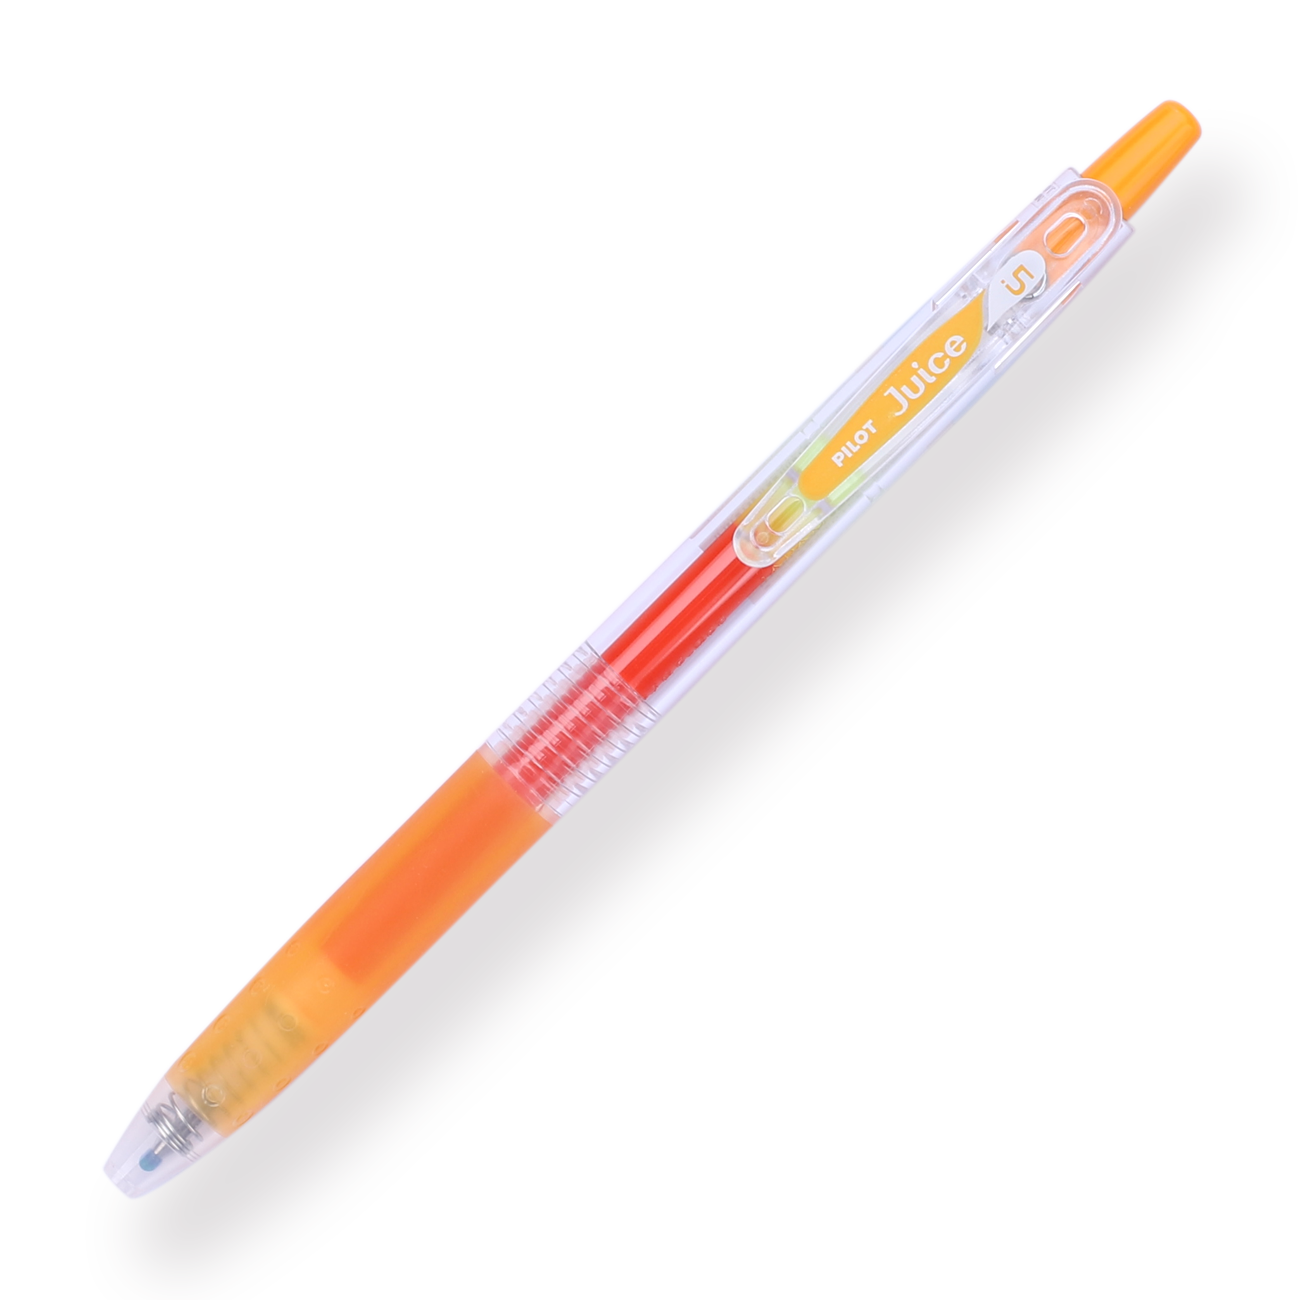 Pen Review: Pilot Juice 6-Color Metallic & Pastel Sets (with Bonus White  Gel Pen Comparison) - The Well-Appointed Desk